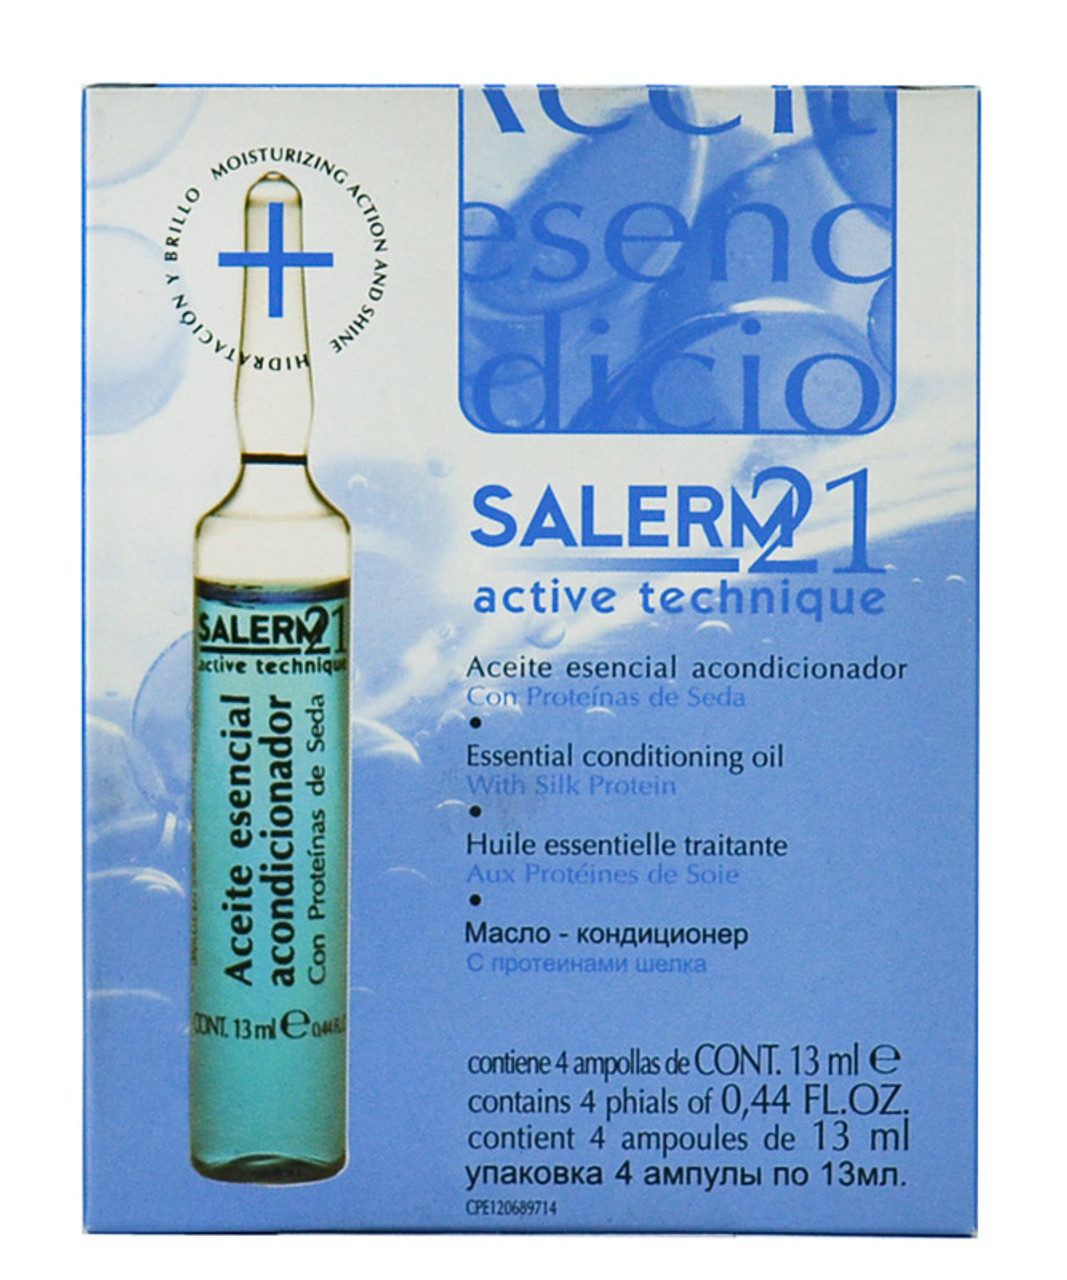 Salerm 21 Silk Protein Sets - Trio Gifts Set by Salerm 